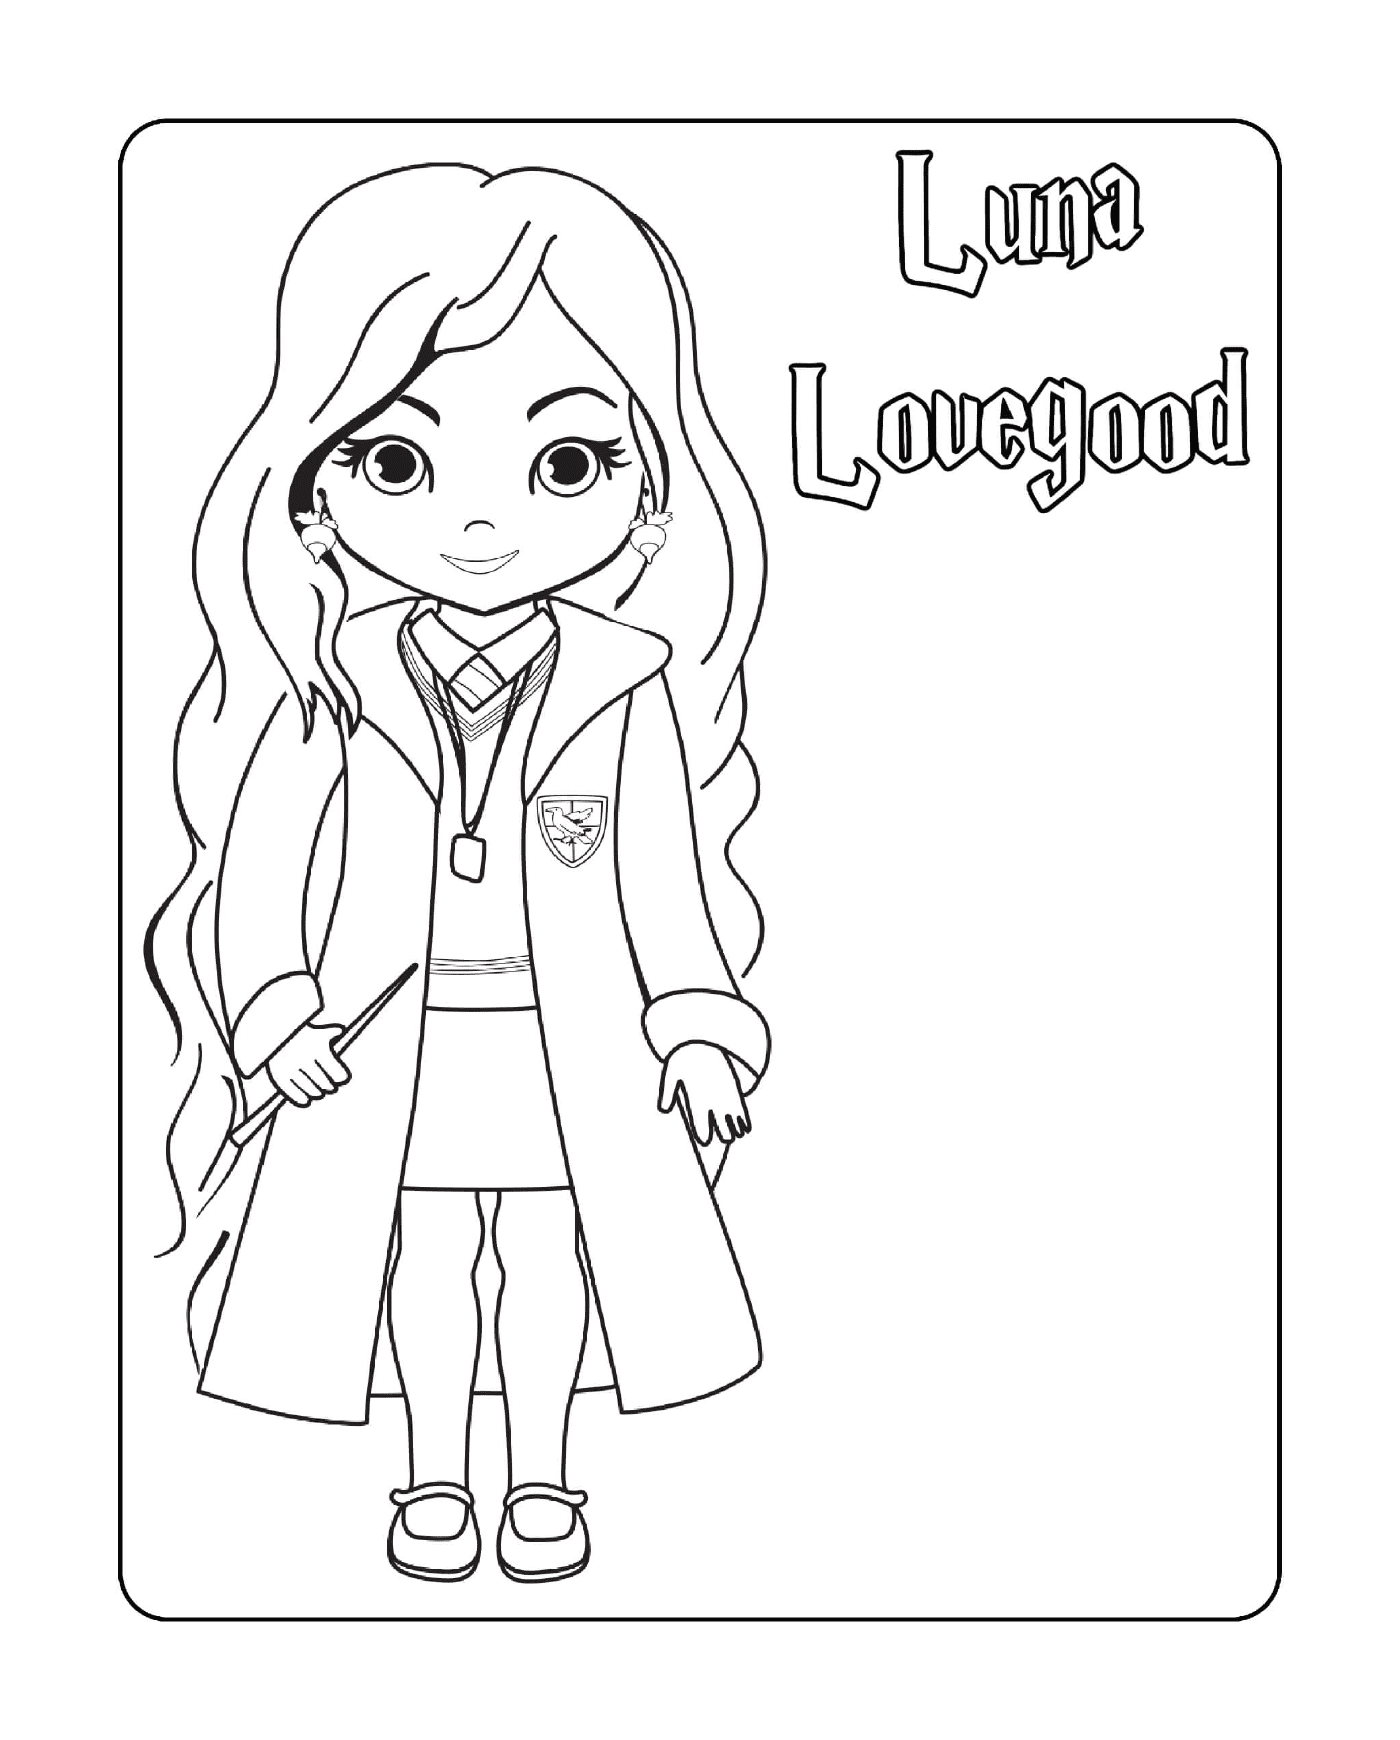  Luna Lovegood, Zauberstab in der Hand 